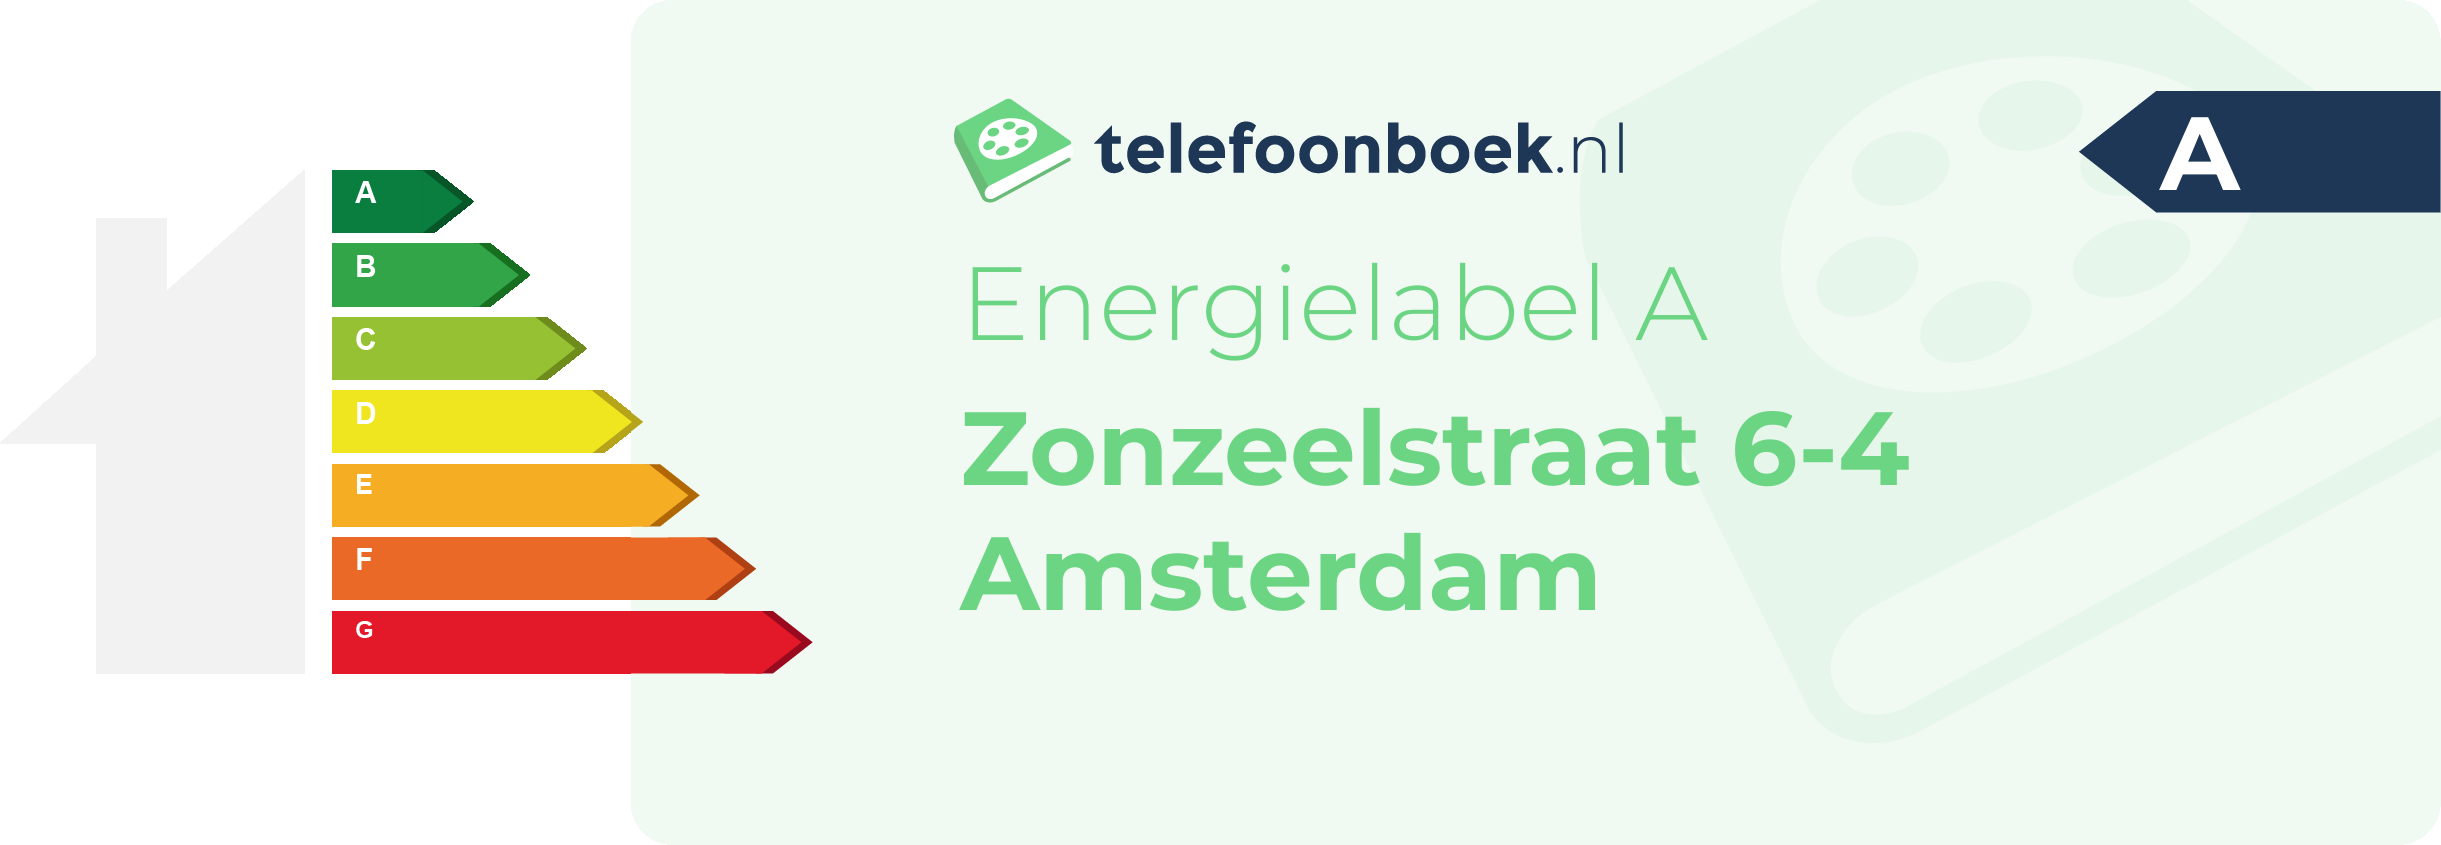 Energielabel Zonzeelstraat 6-4 Amsterdam